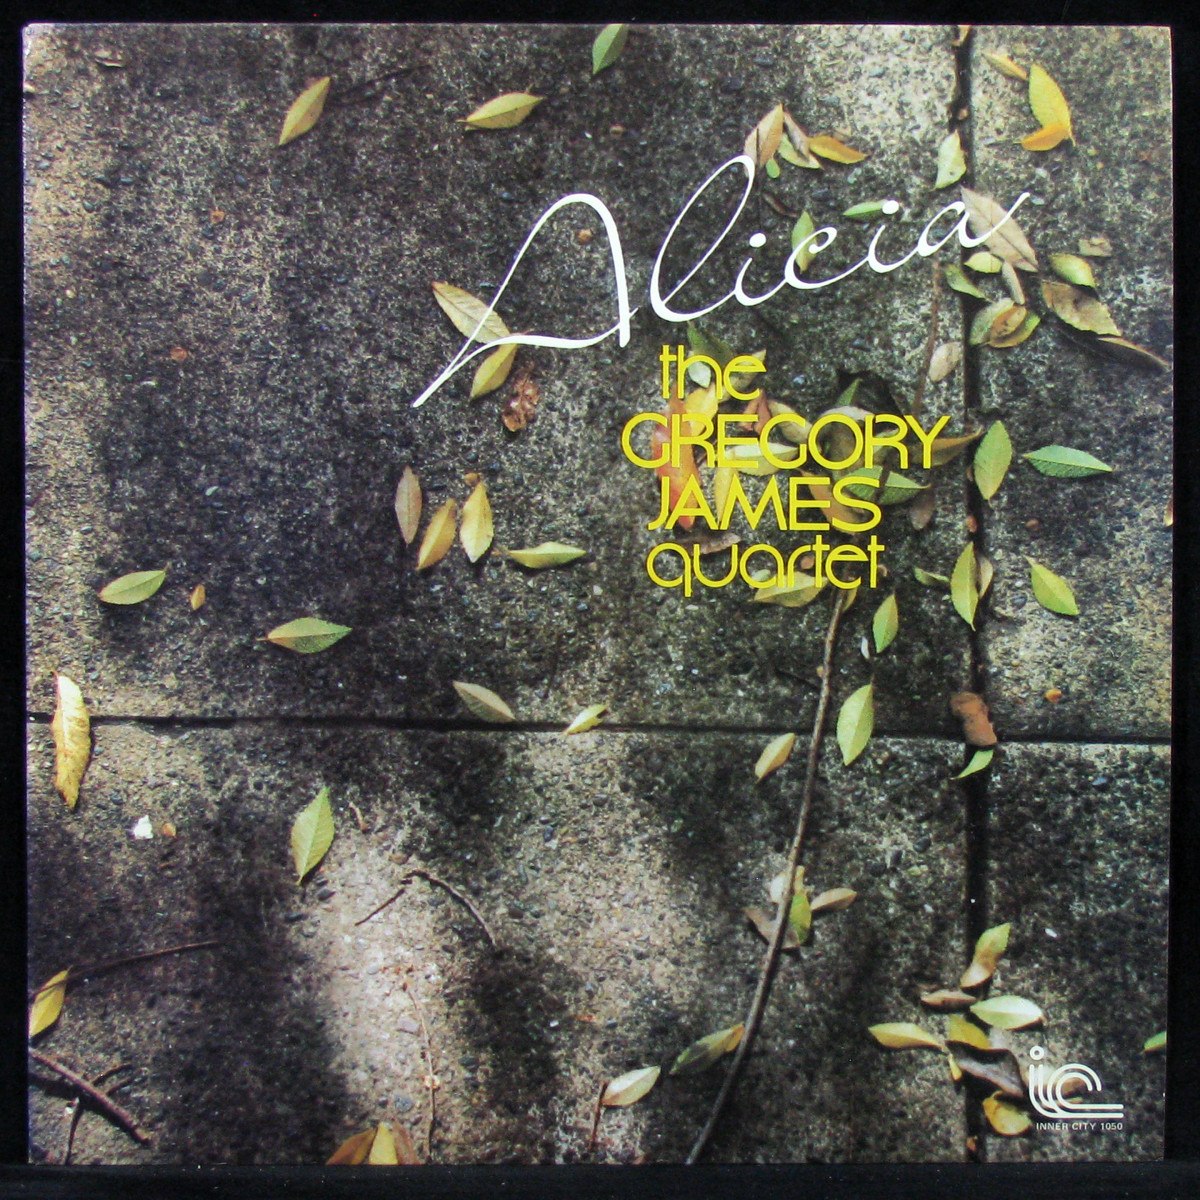 LP Gregory James Quartet — Alicia фото